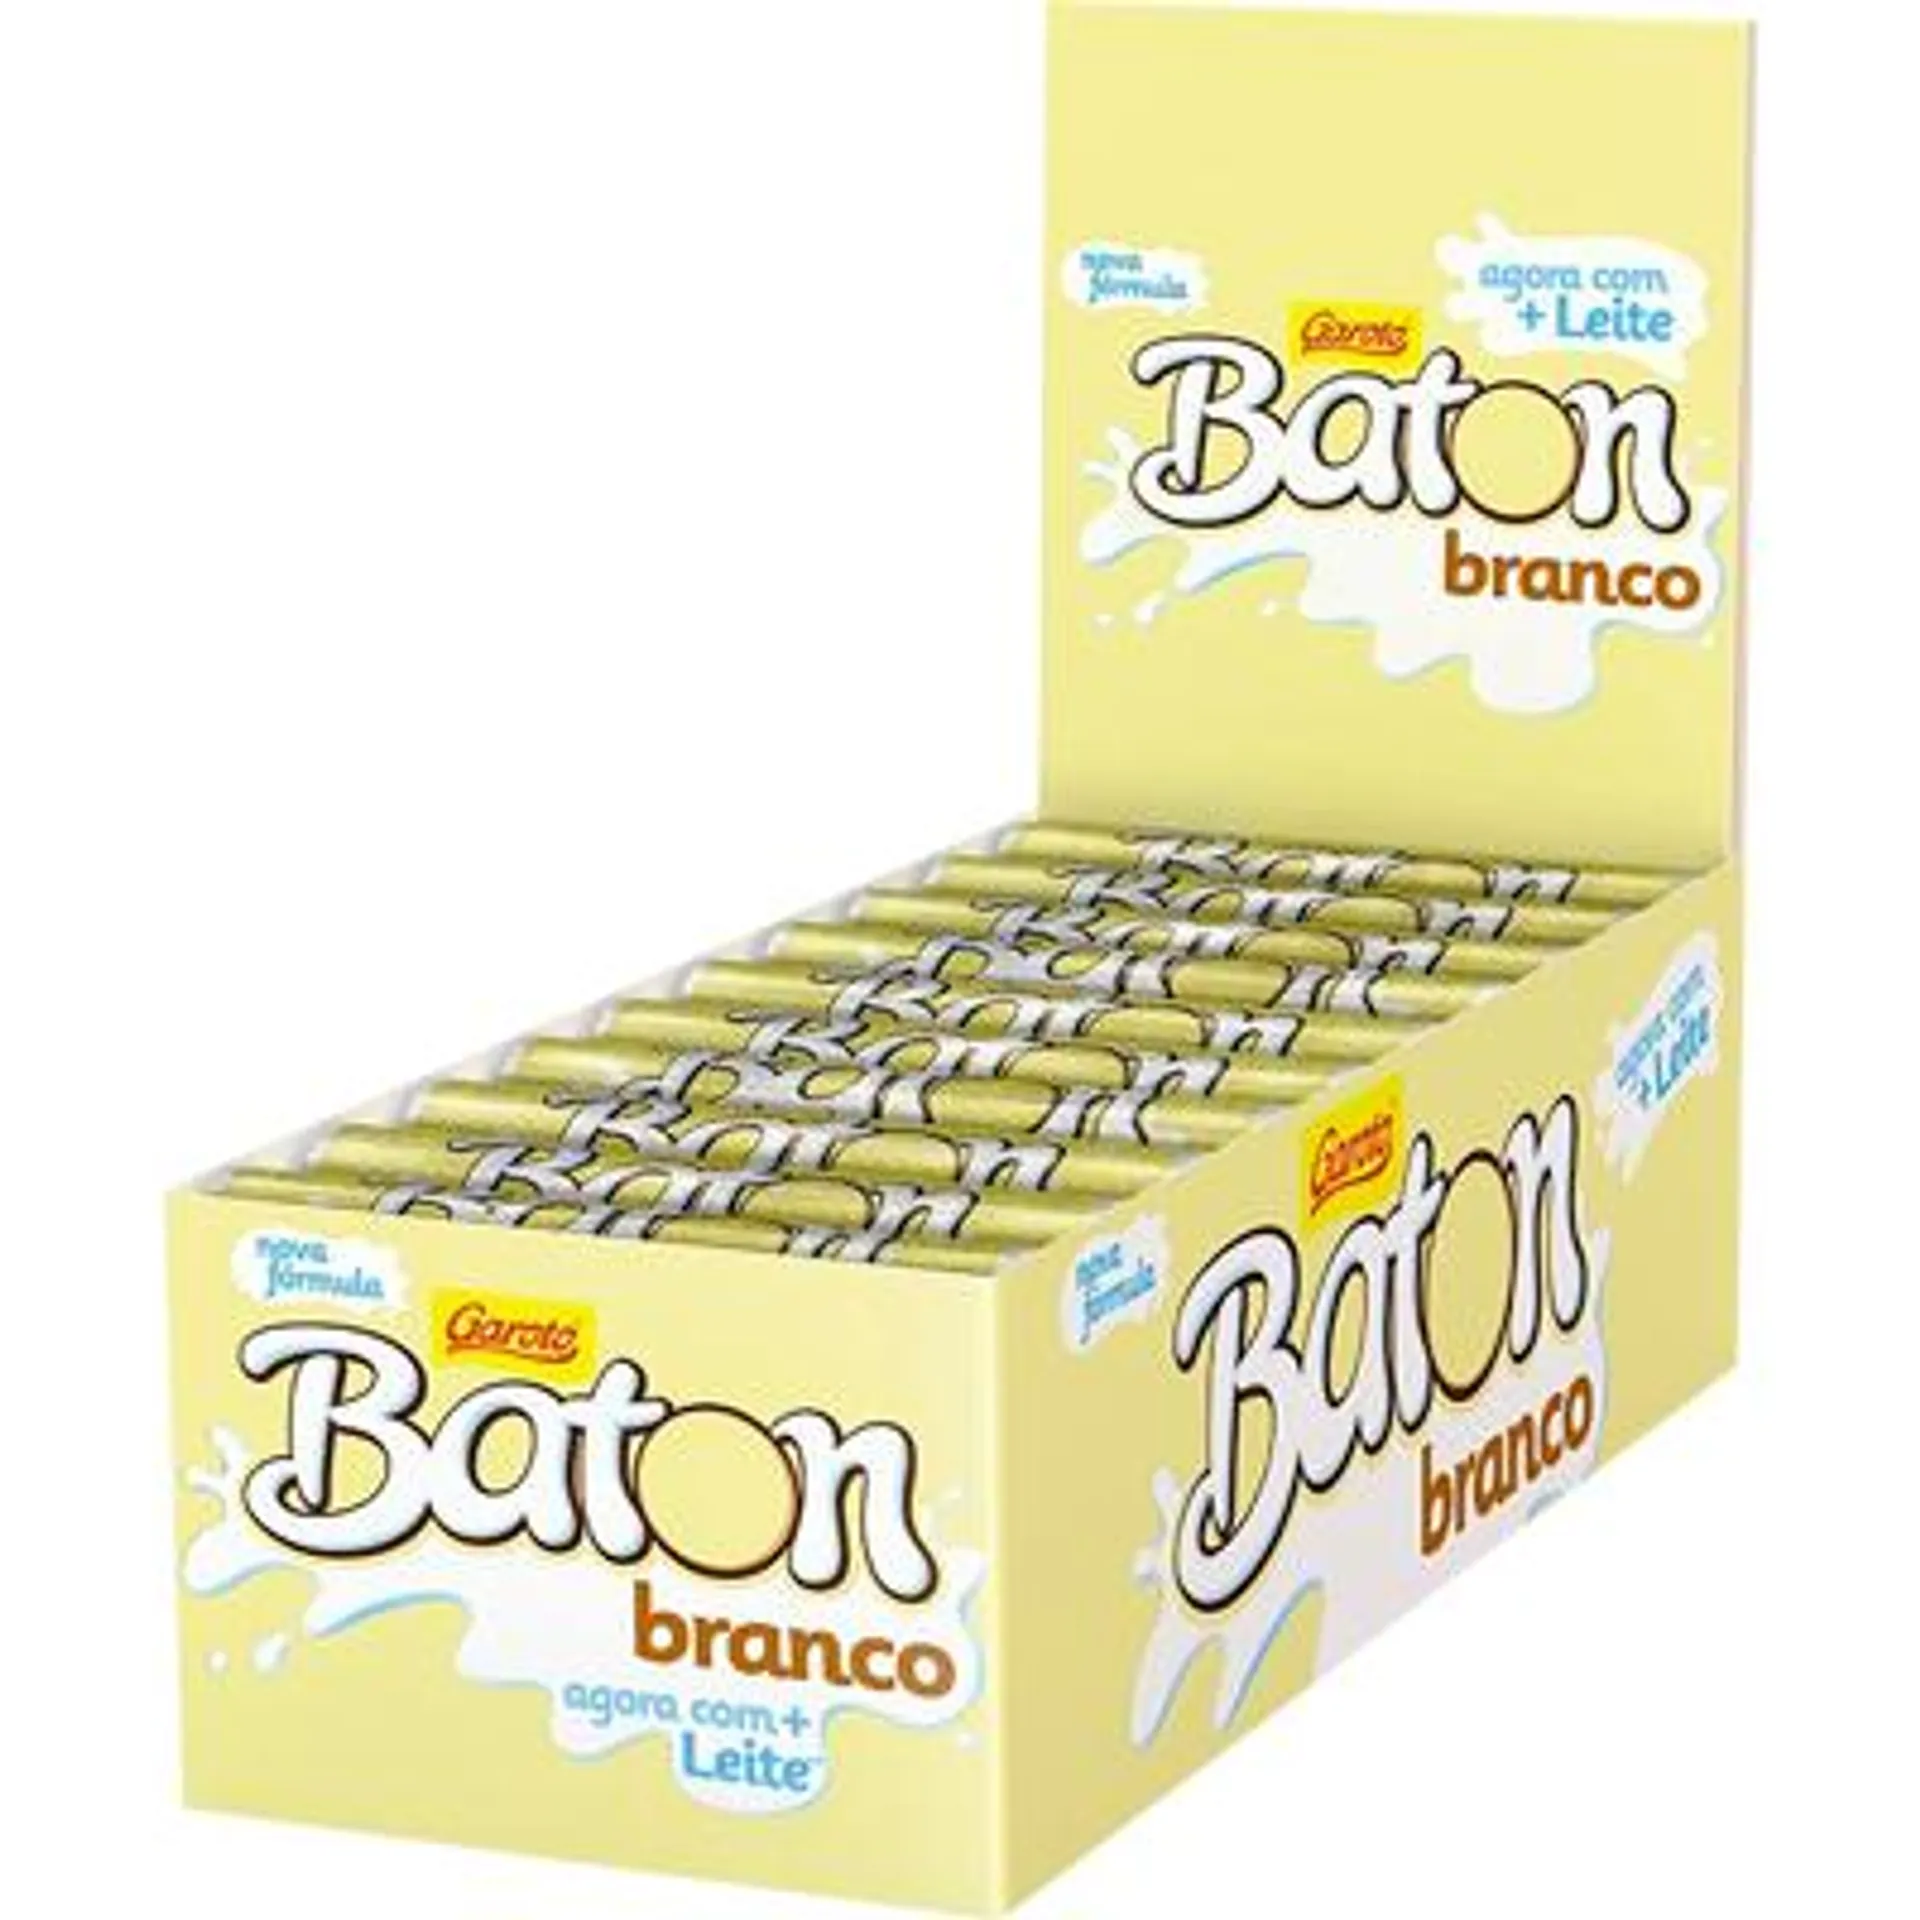 Chocolate Branco caixa 30 unidades de 16g - Garoto/Baton